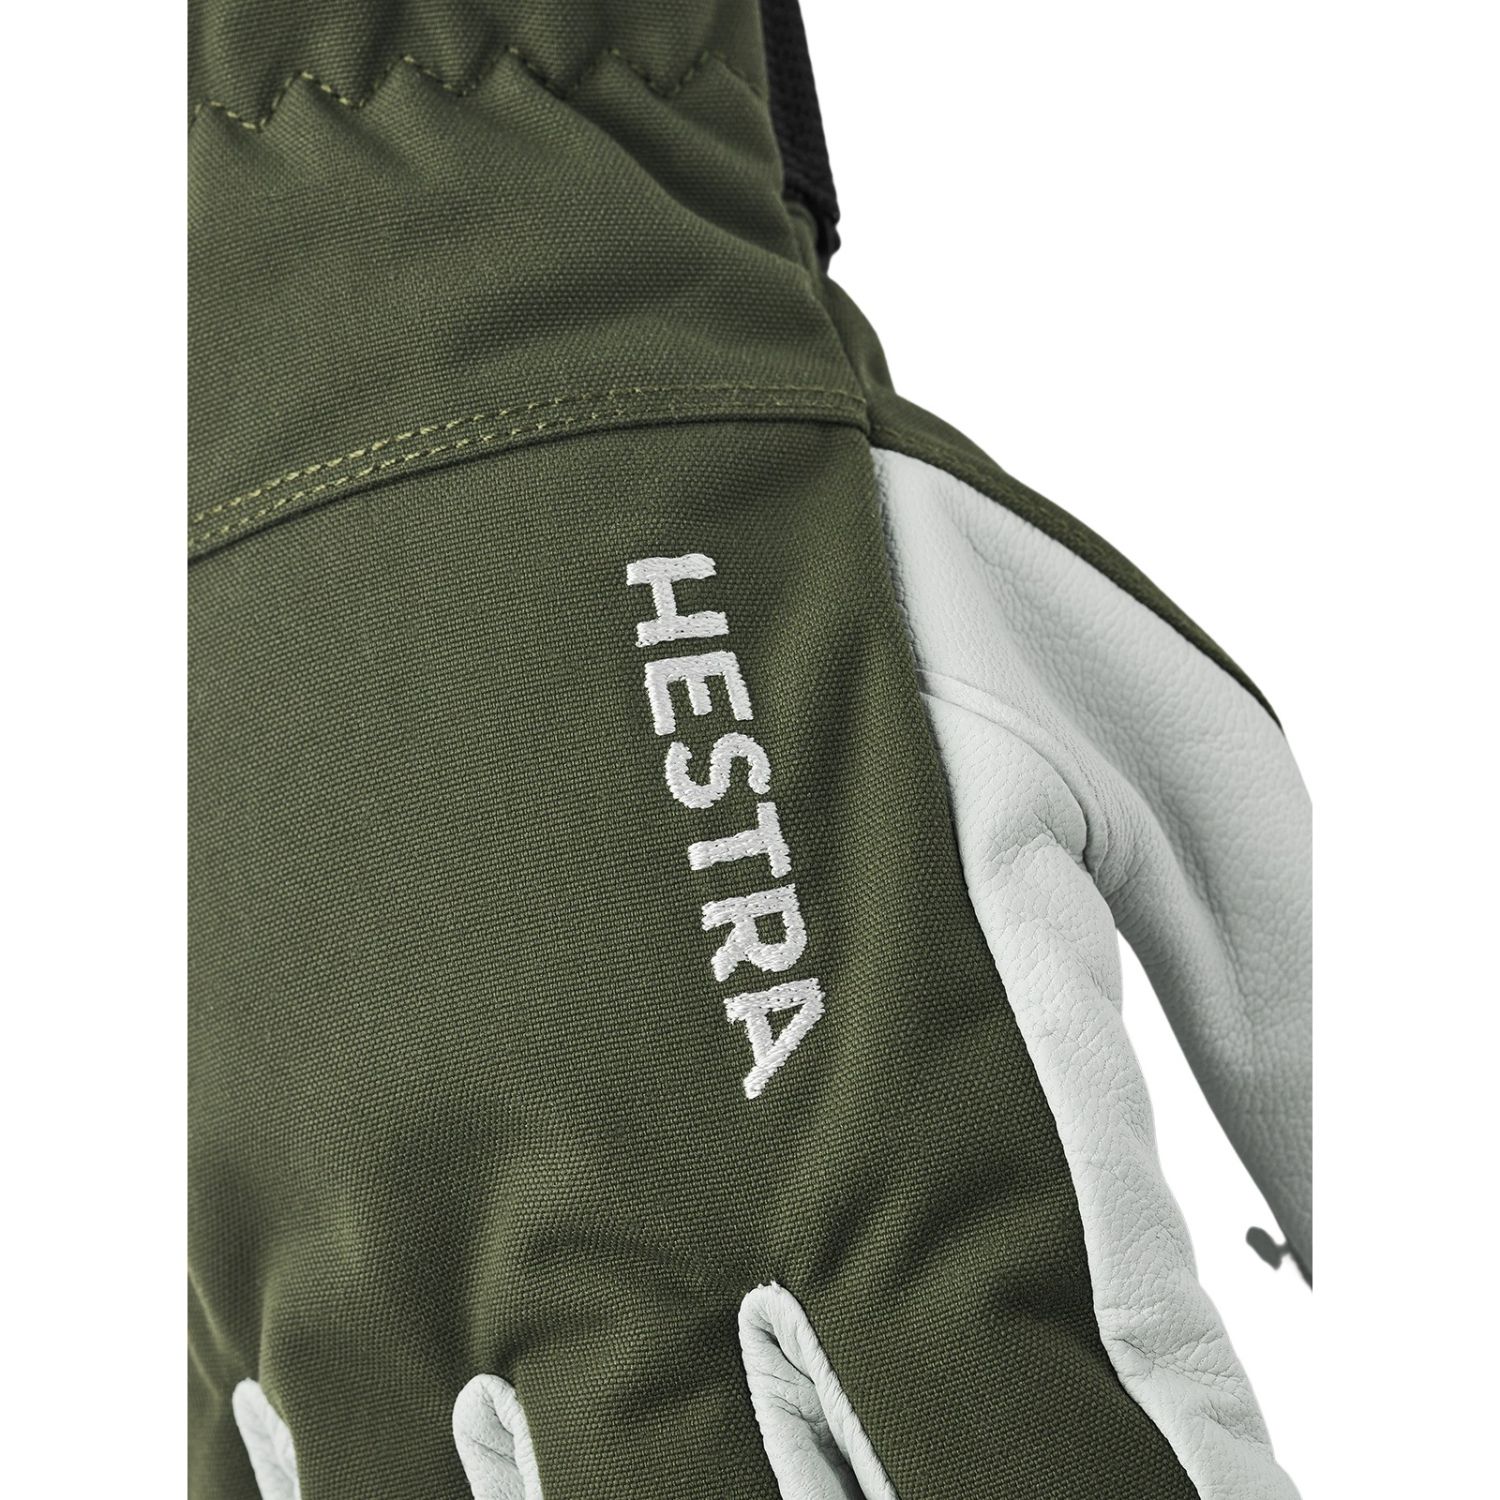 Hestra Army Leather Heli Ski, ski gloves, olive